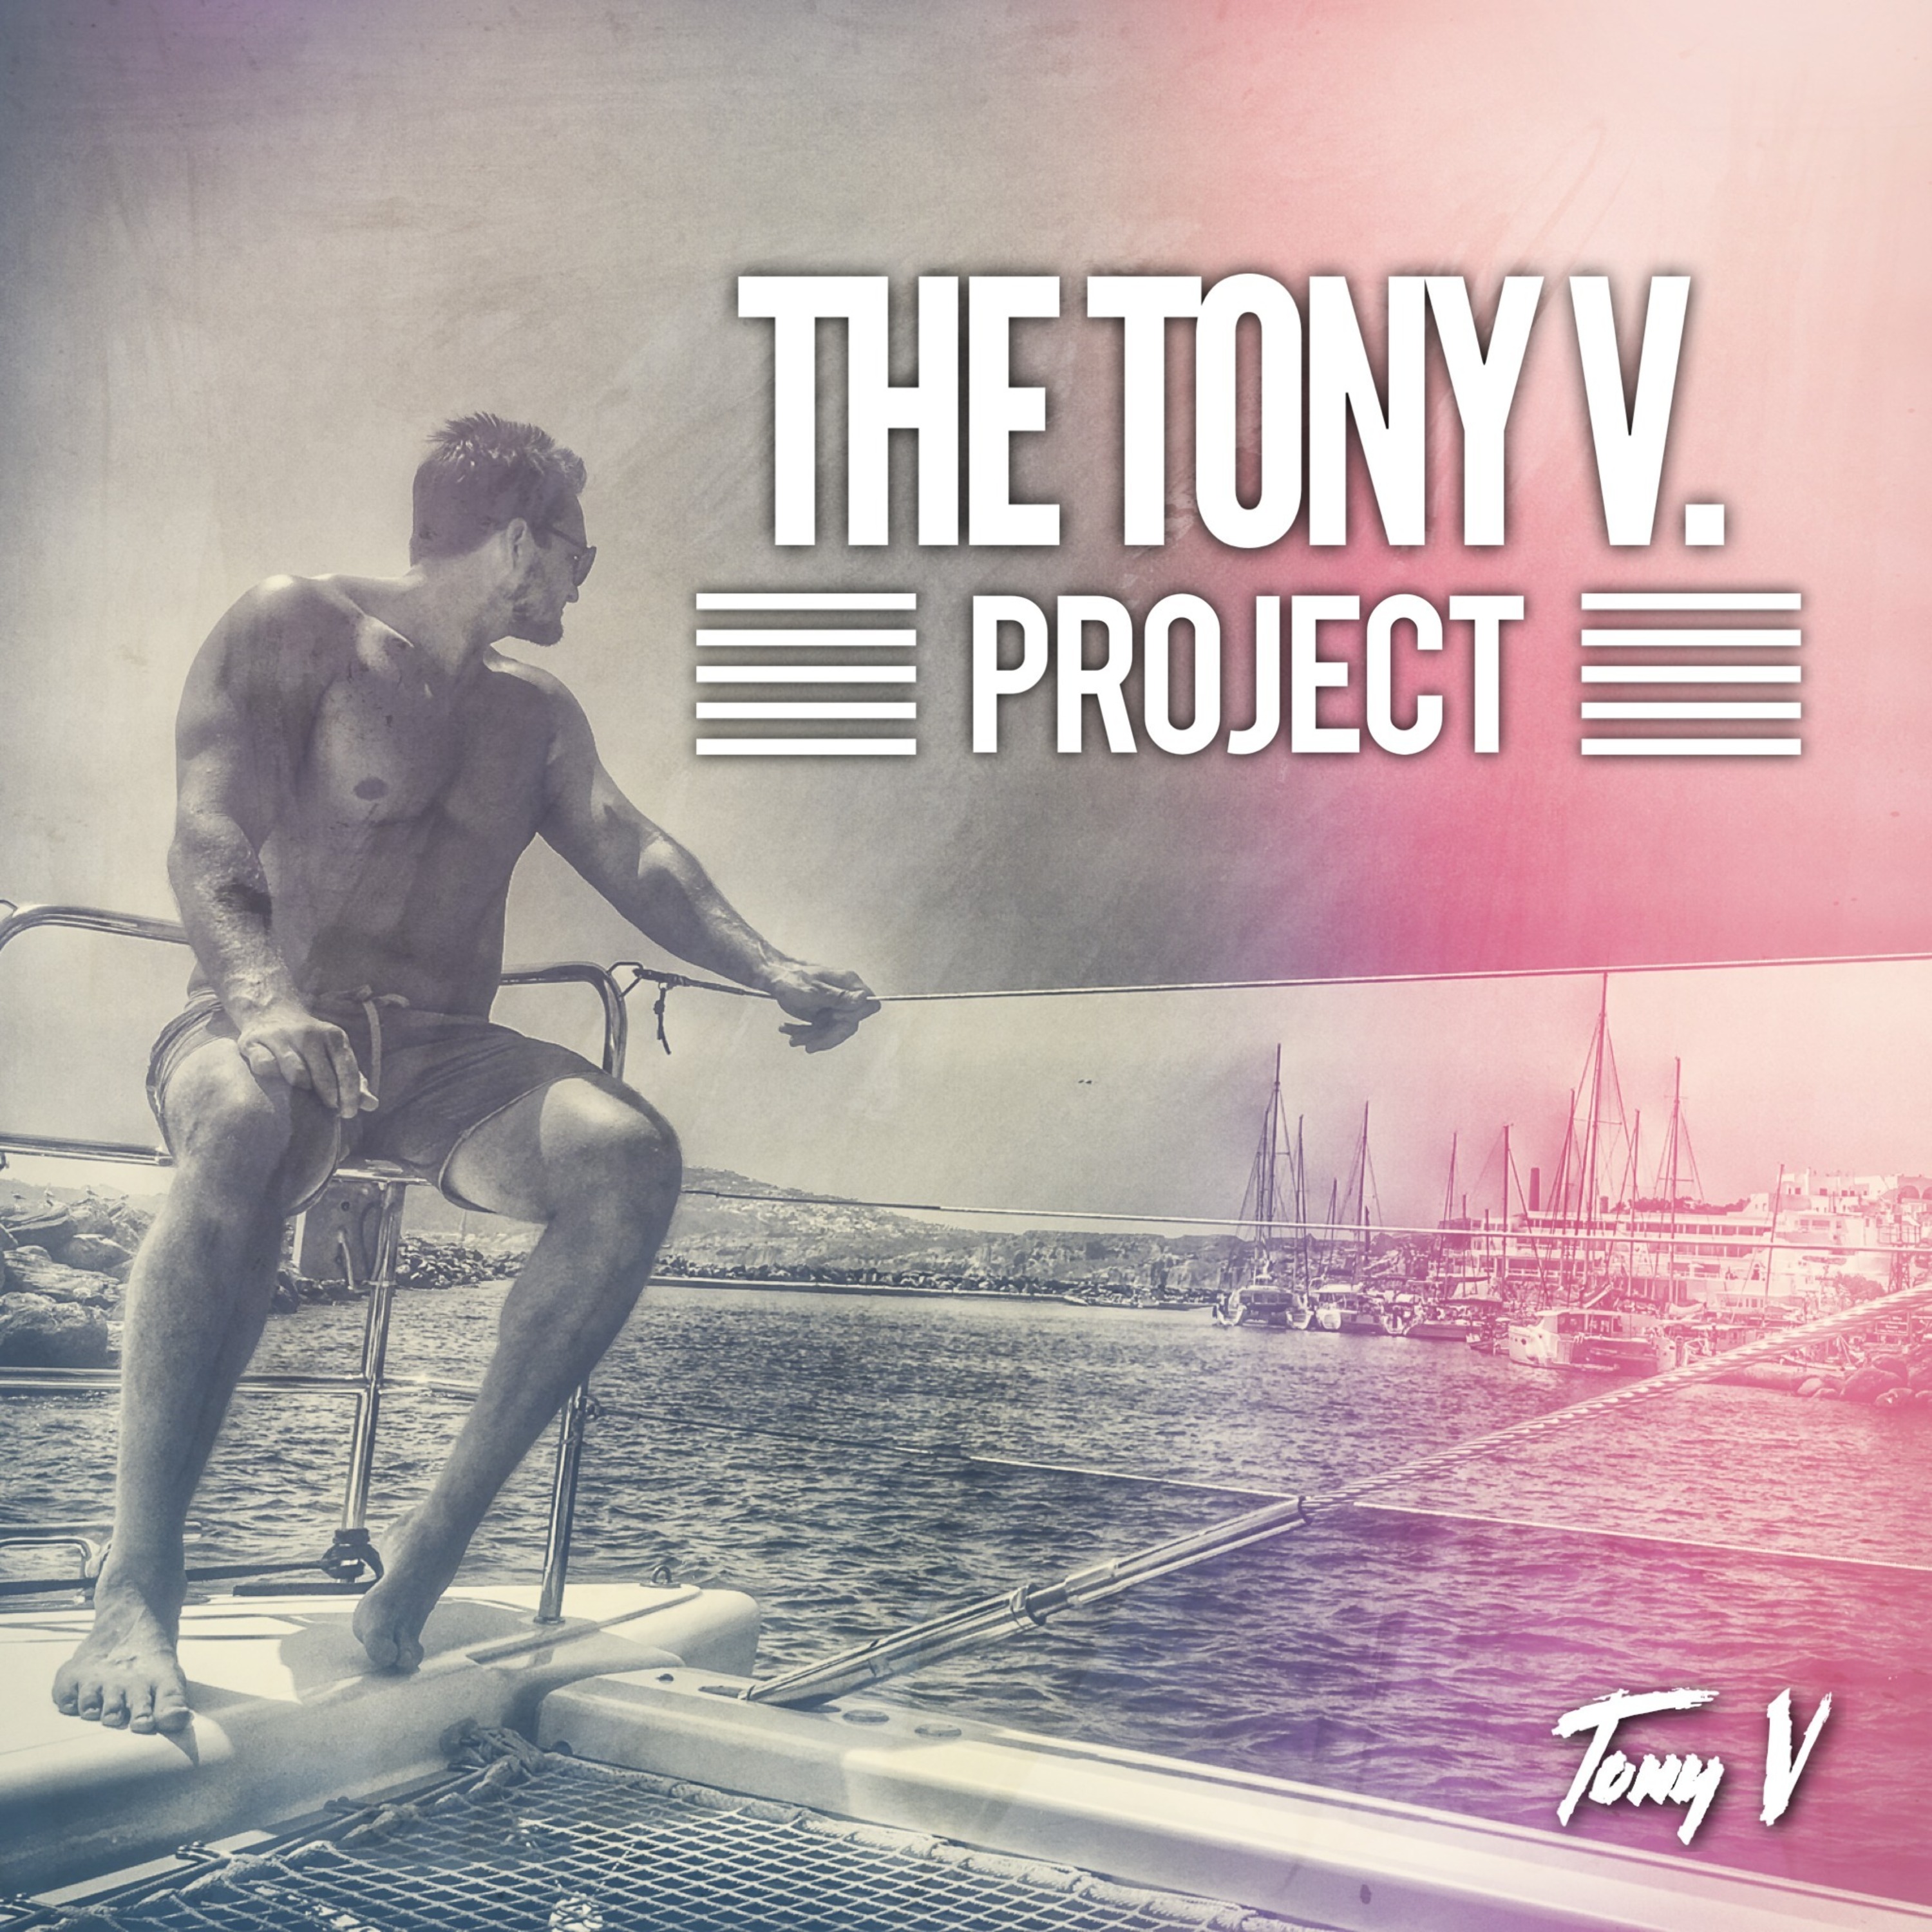 The Tony V. Project